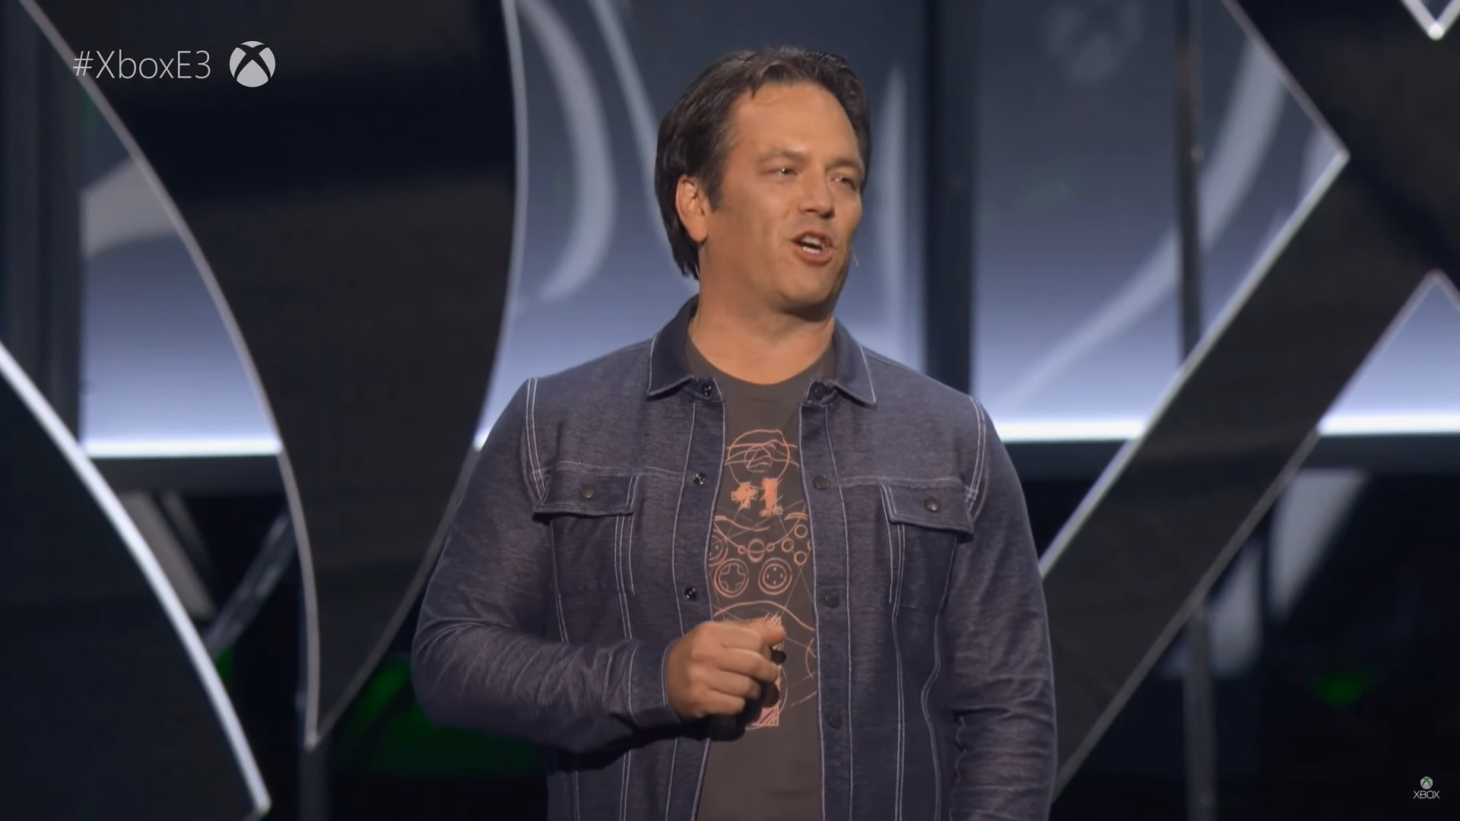 Xbox E3 2018 Presentation